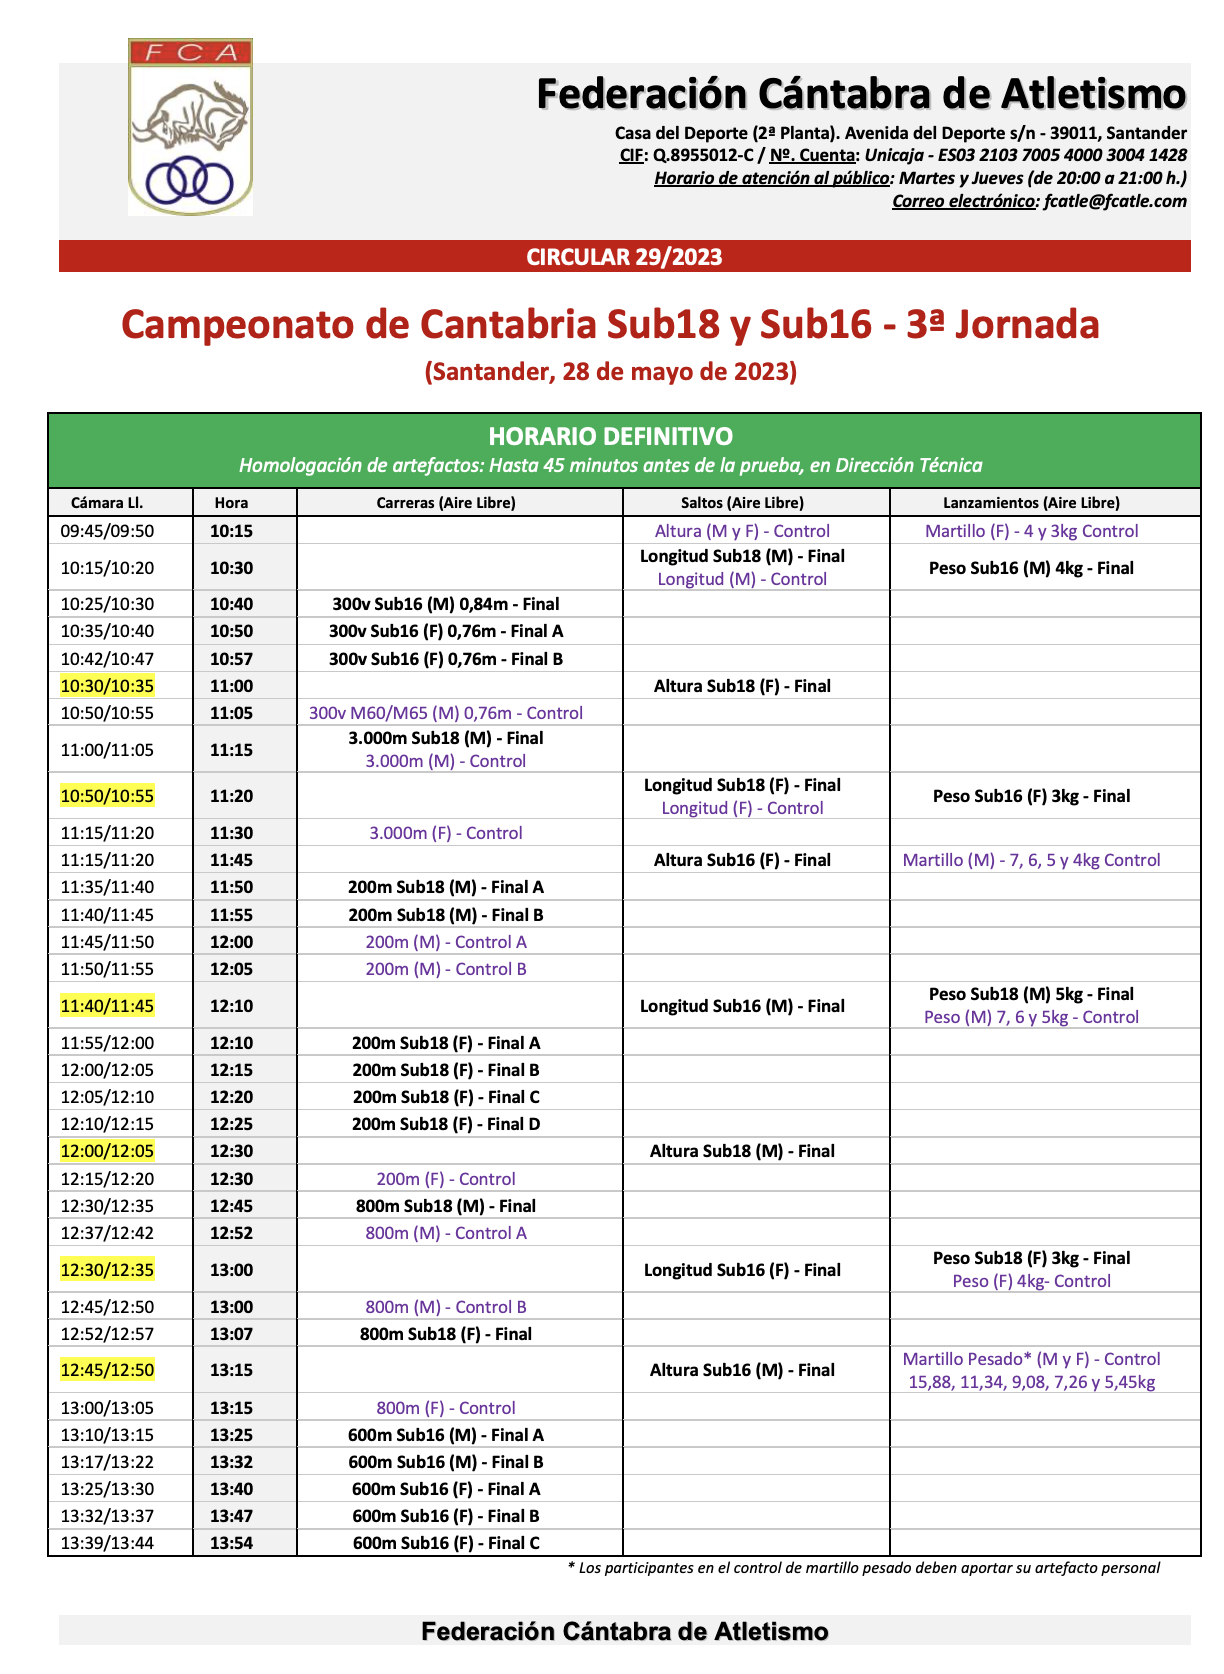 Campeonato de Cantabria Sub18 y Sub16 - 3ª Jornada @ Santander, Cantabria